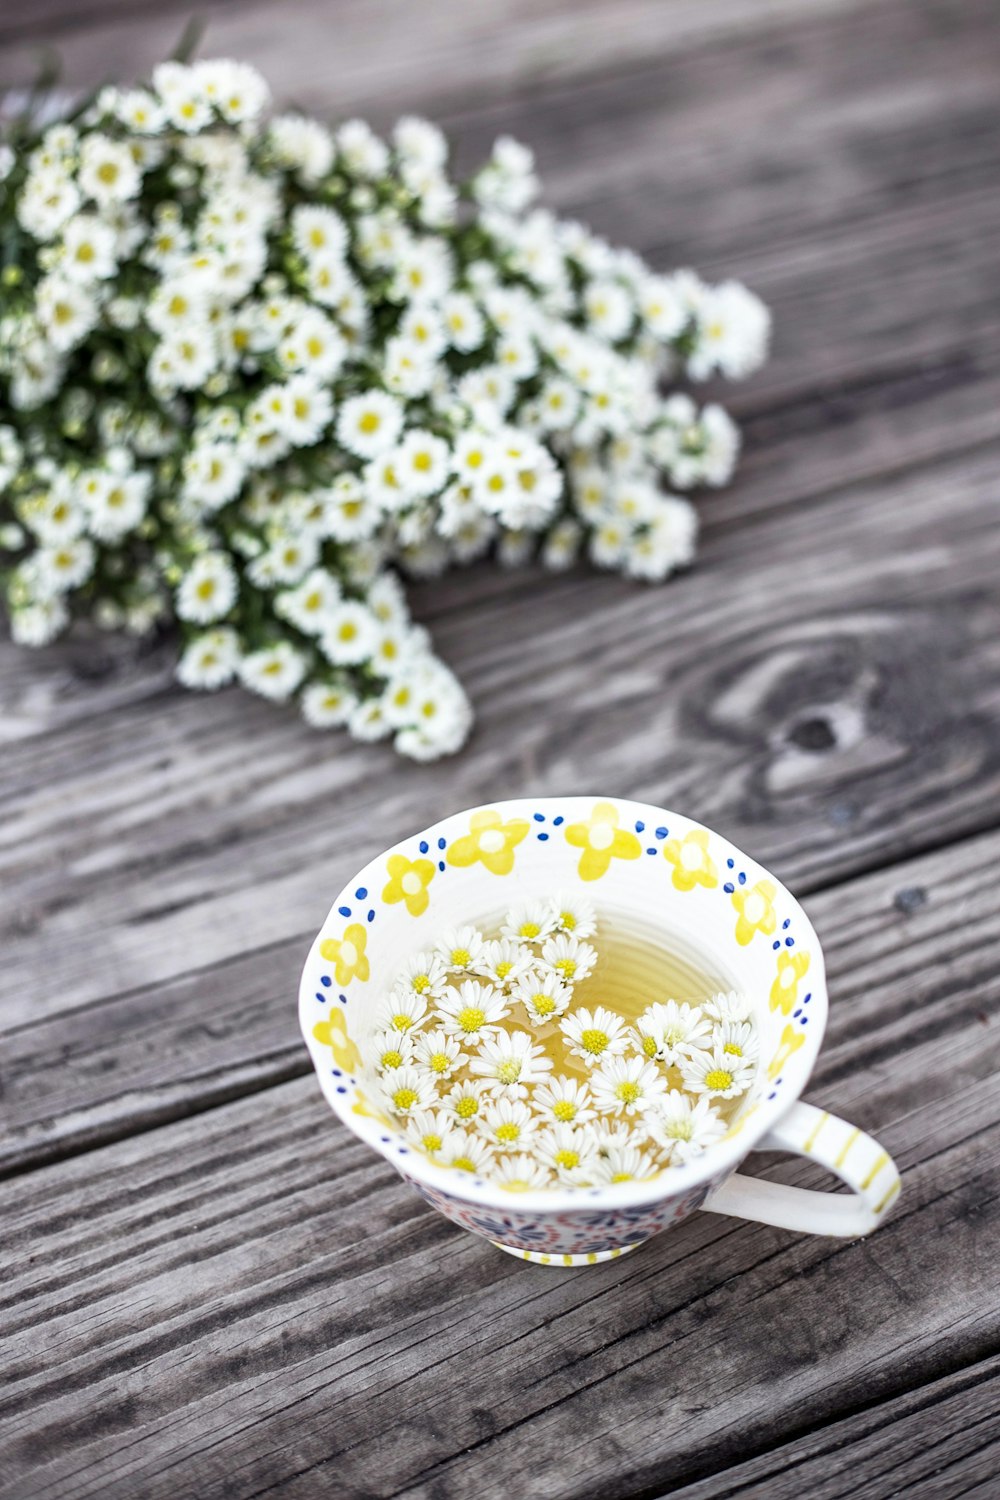 tazza bianca e gialla con fiori sul tavolo